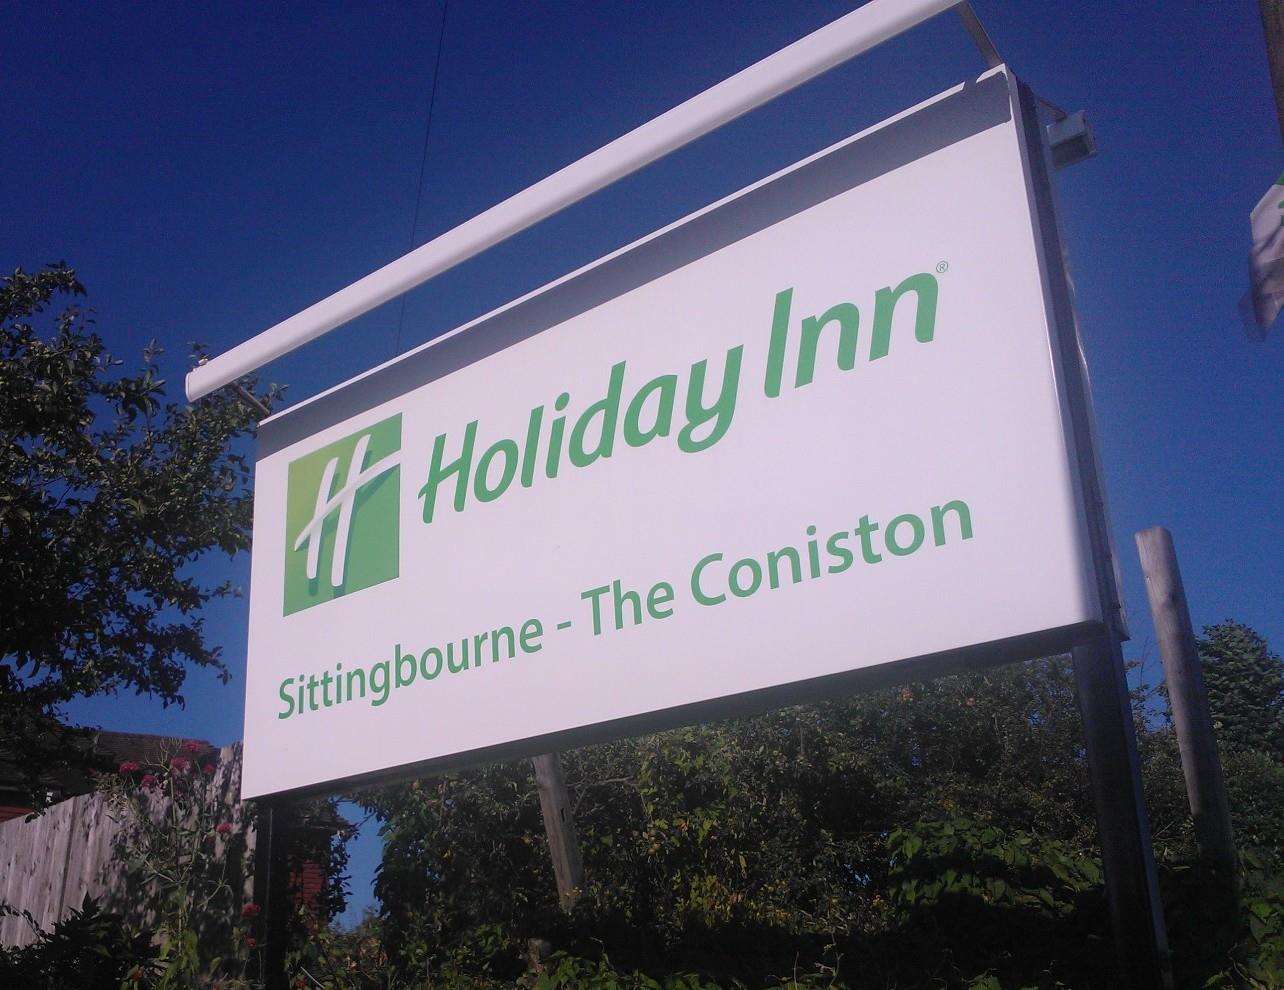 The Coniston Hotel in Sittingbourne